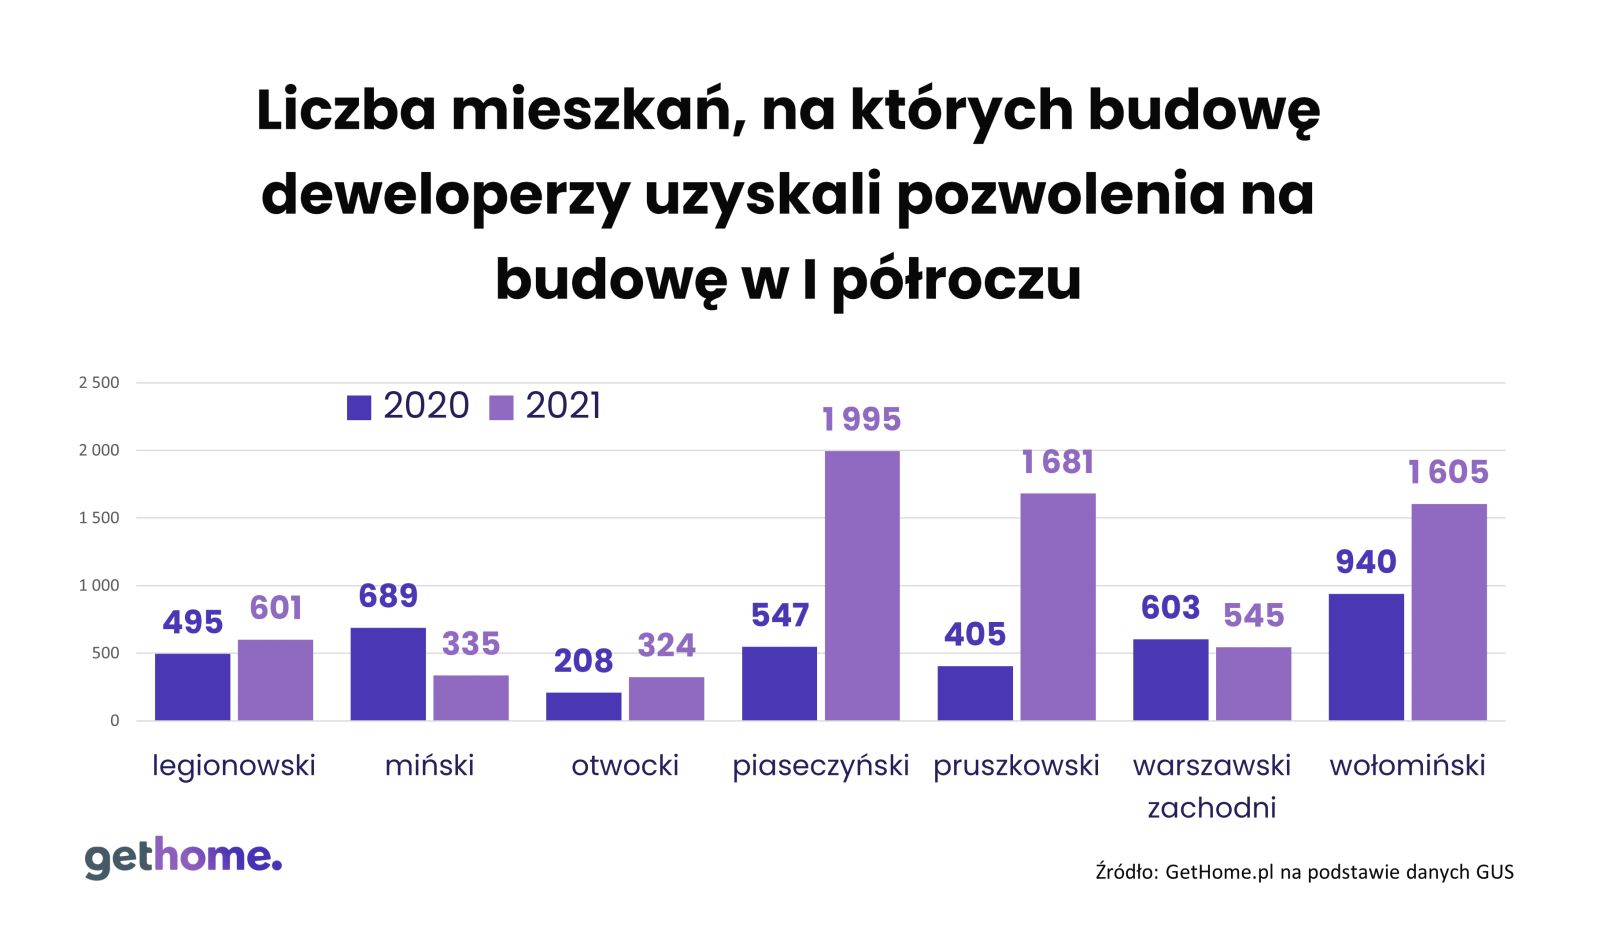 Wykres słupkowy przedstawiający liczbę mieszkań, na których budowę deweloperzy uzyskali pozwolenia na budowę – powiaty podwarszawskie, I półrocze 2021 r. 